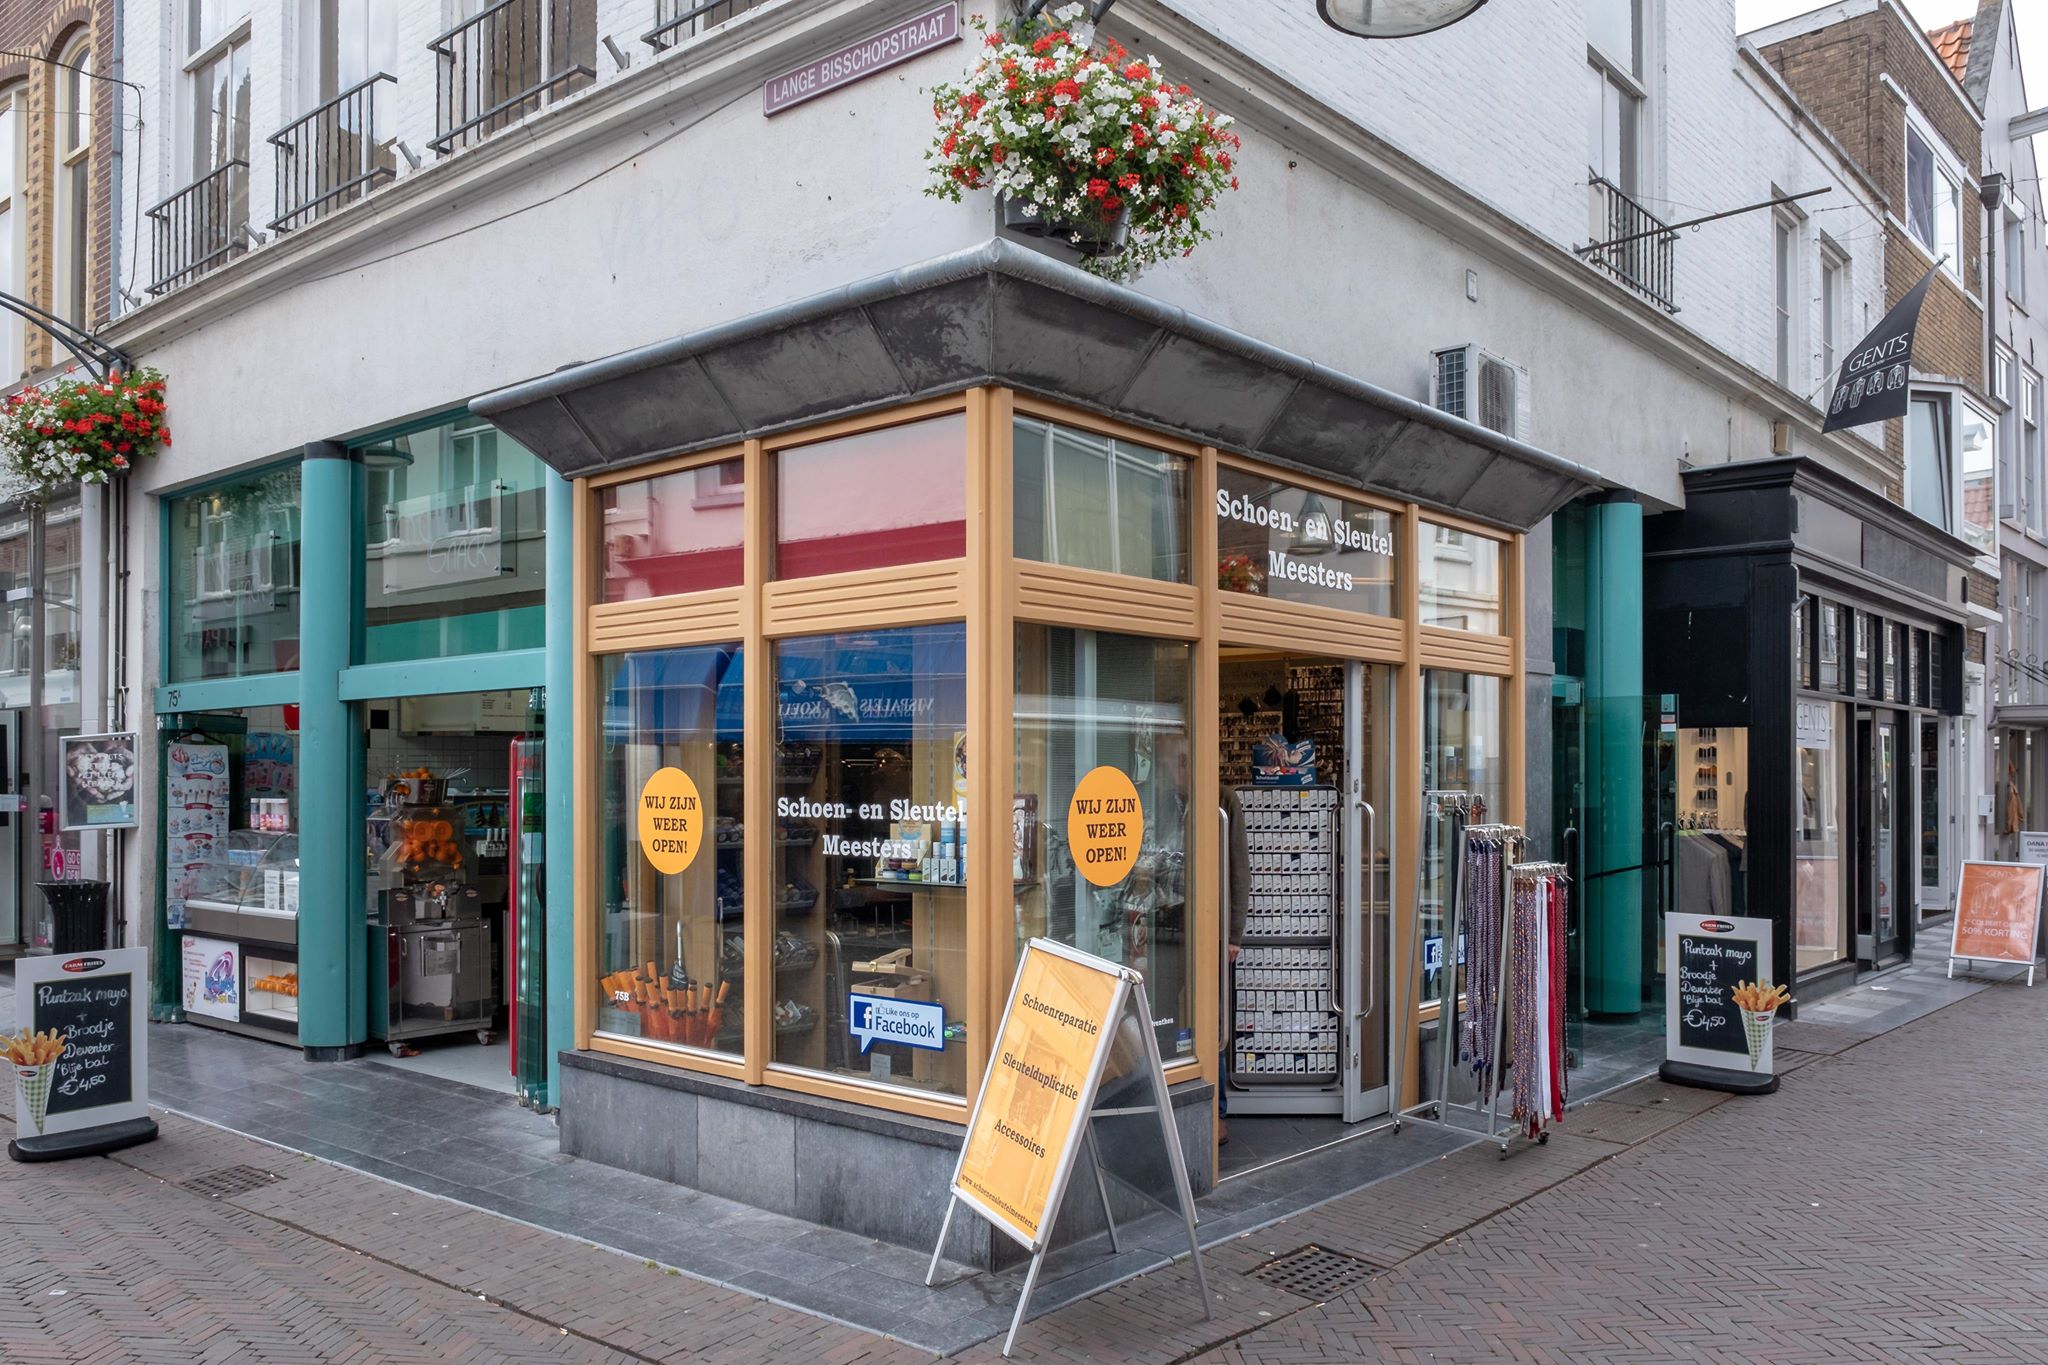 Schoen-en-sleutelmeesters en meer winkels in Deventer vind je bij Shoppen in Deventer